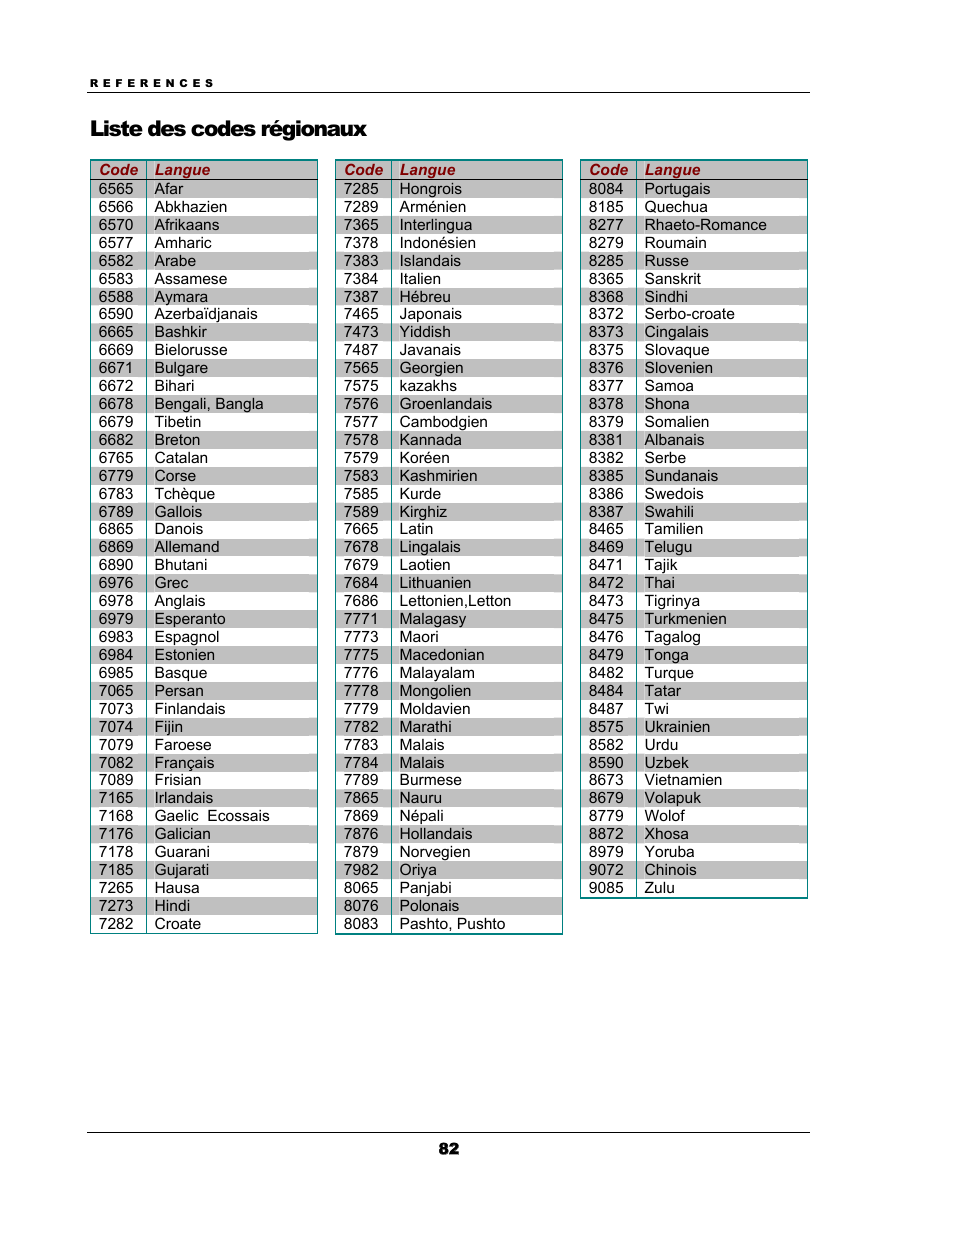 Liste des codes régionaux | Oppo BDP-93EU Manuel d'utilisation | Page 88 / 92